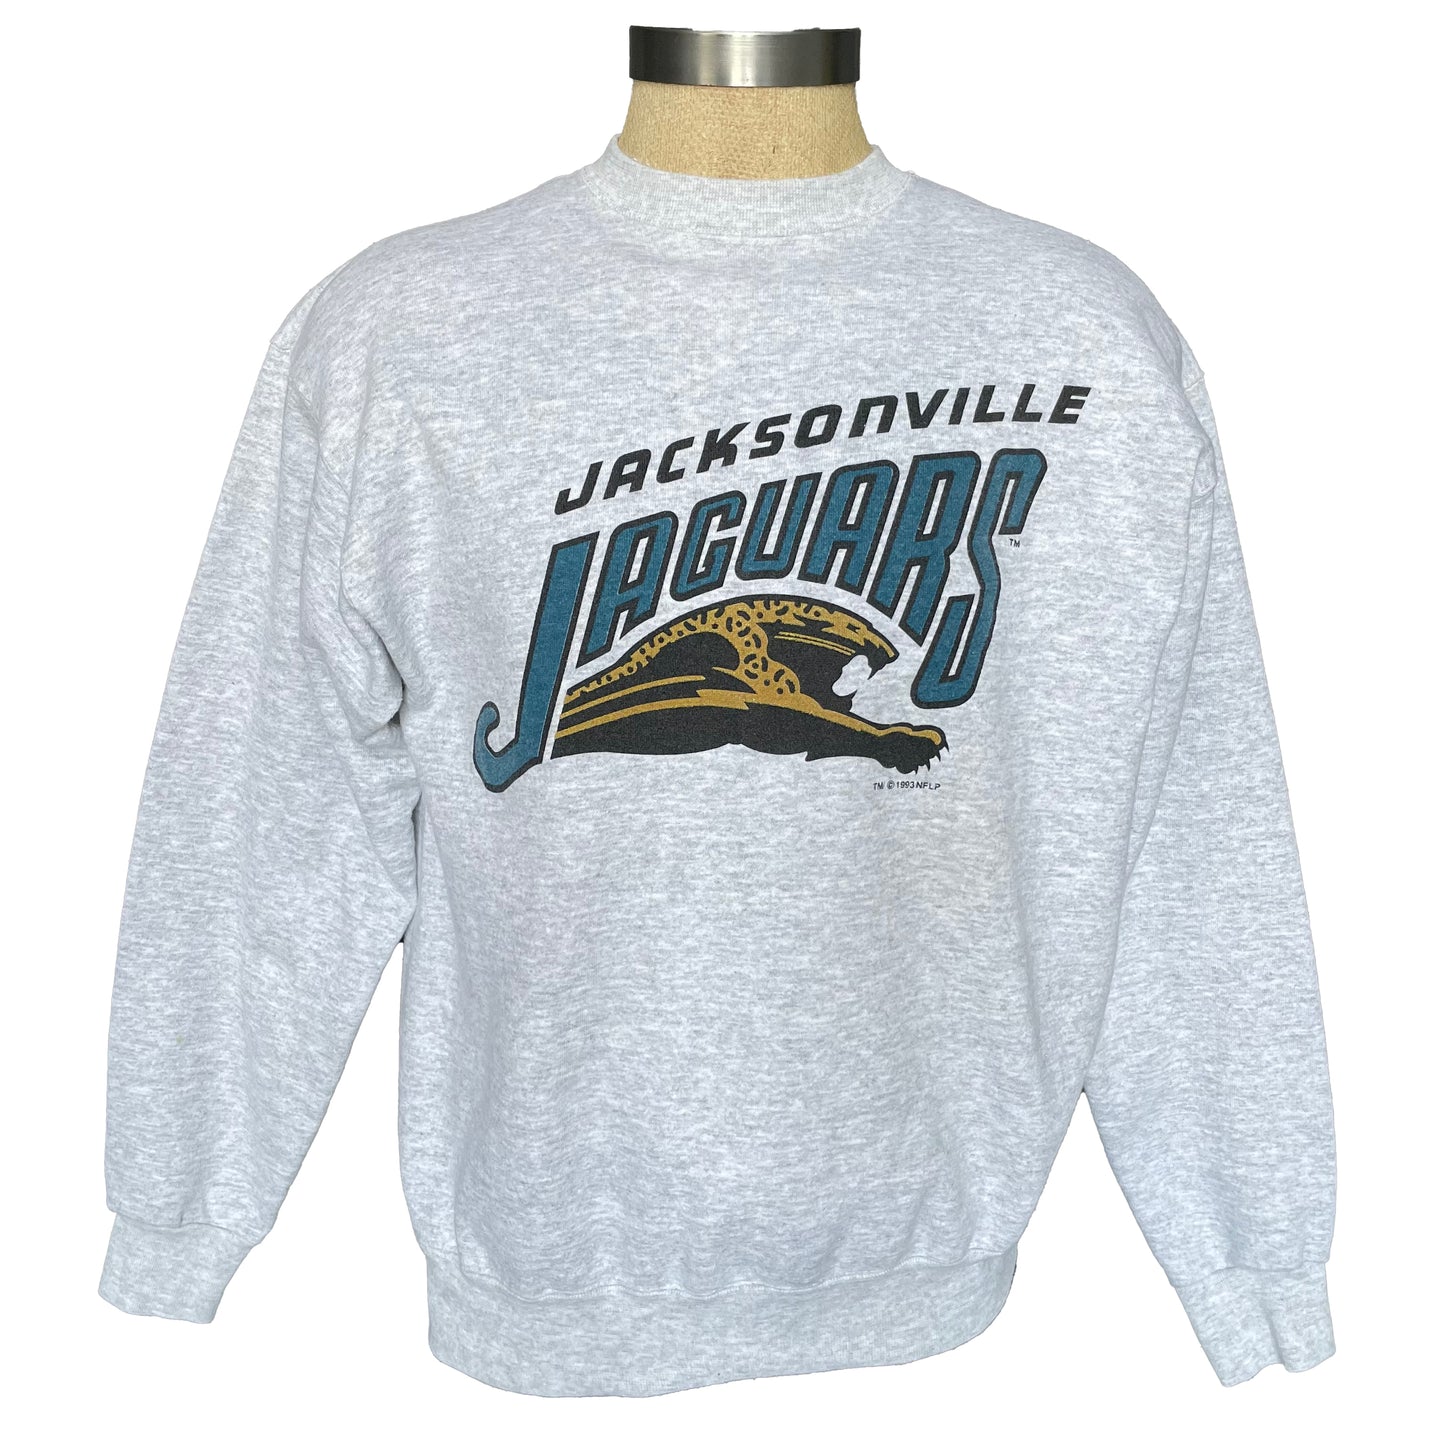 Vintage Jacksonville Jaguars 1993 banned logo SALEM sweatshirt size LARGE